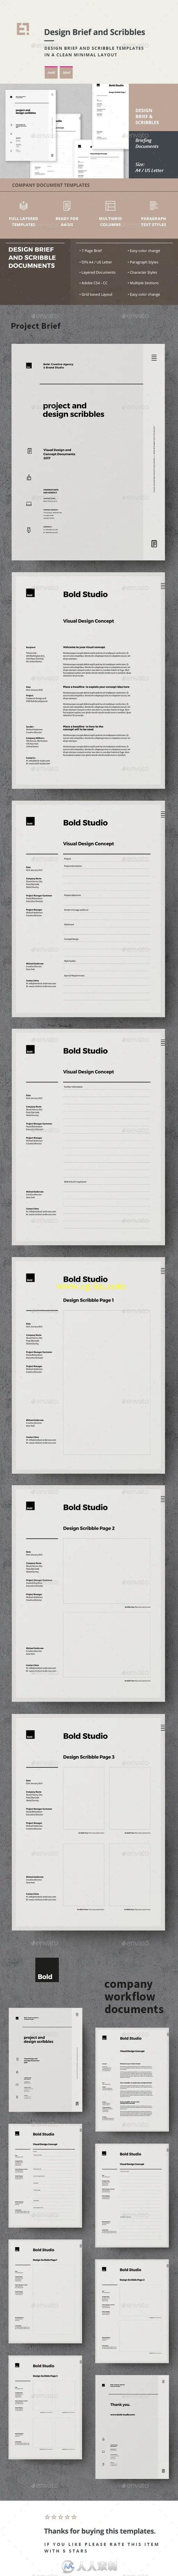 创意简单的企业简介手册indesign排版模板的图片2